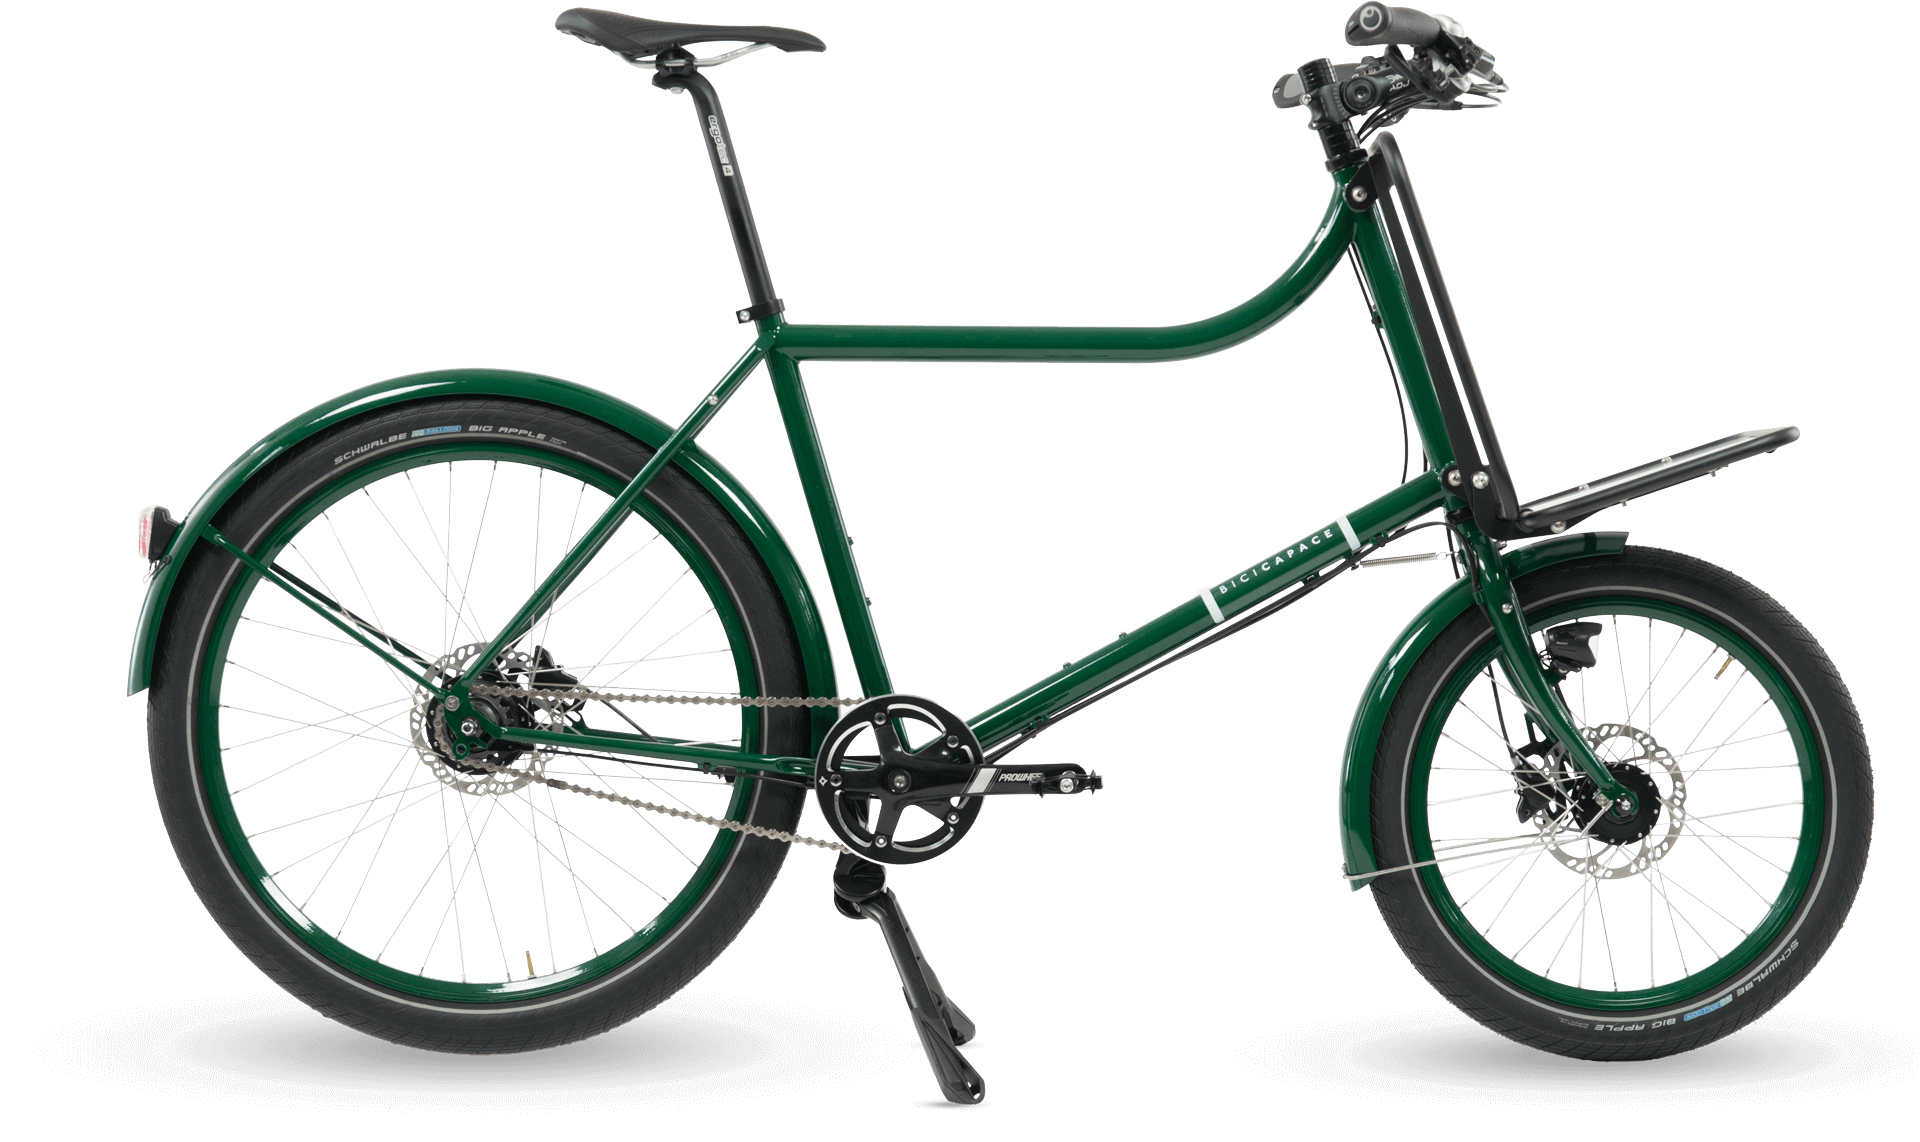 freizeit-bicicapace-dsc-3459-2 rad3 – Produkte – Bicicapace Compact & Sport